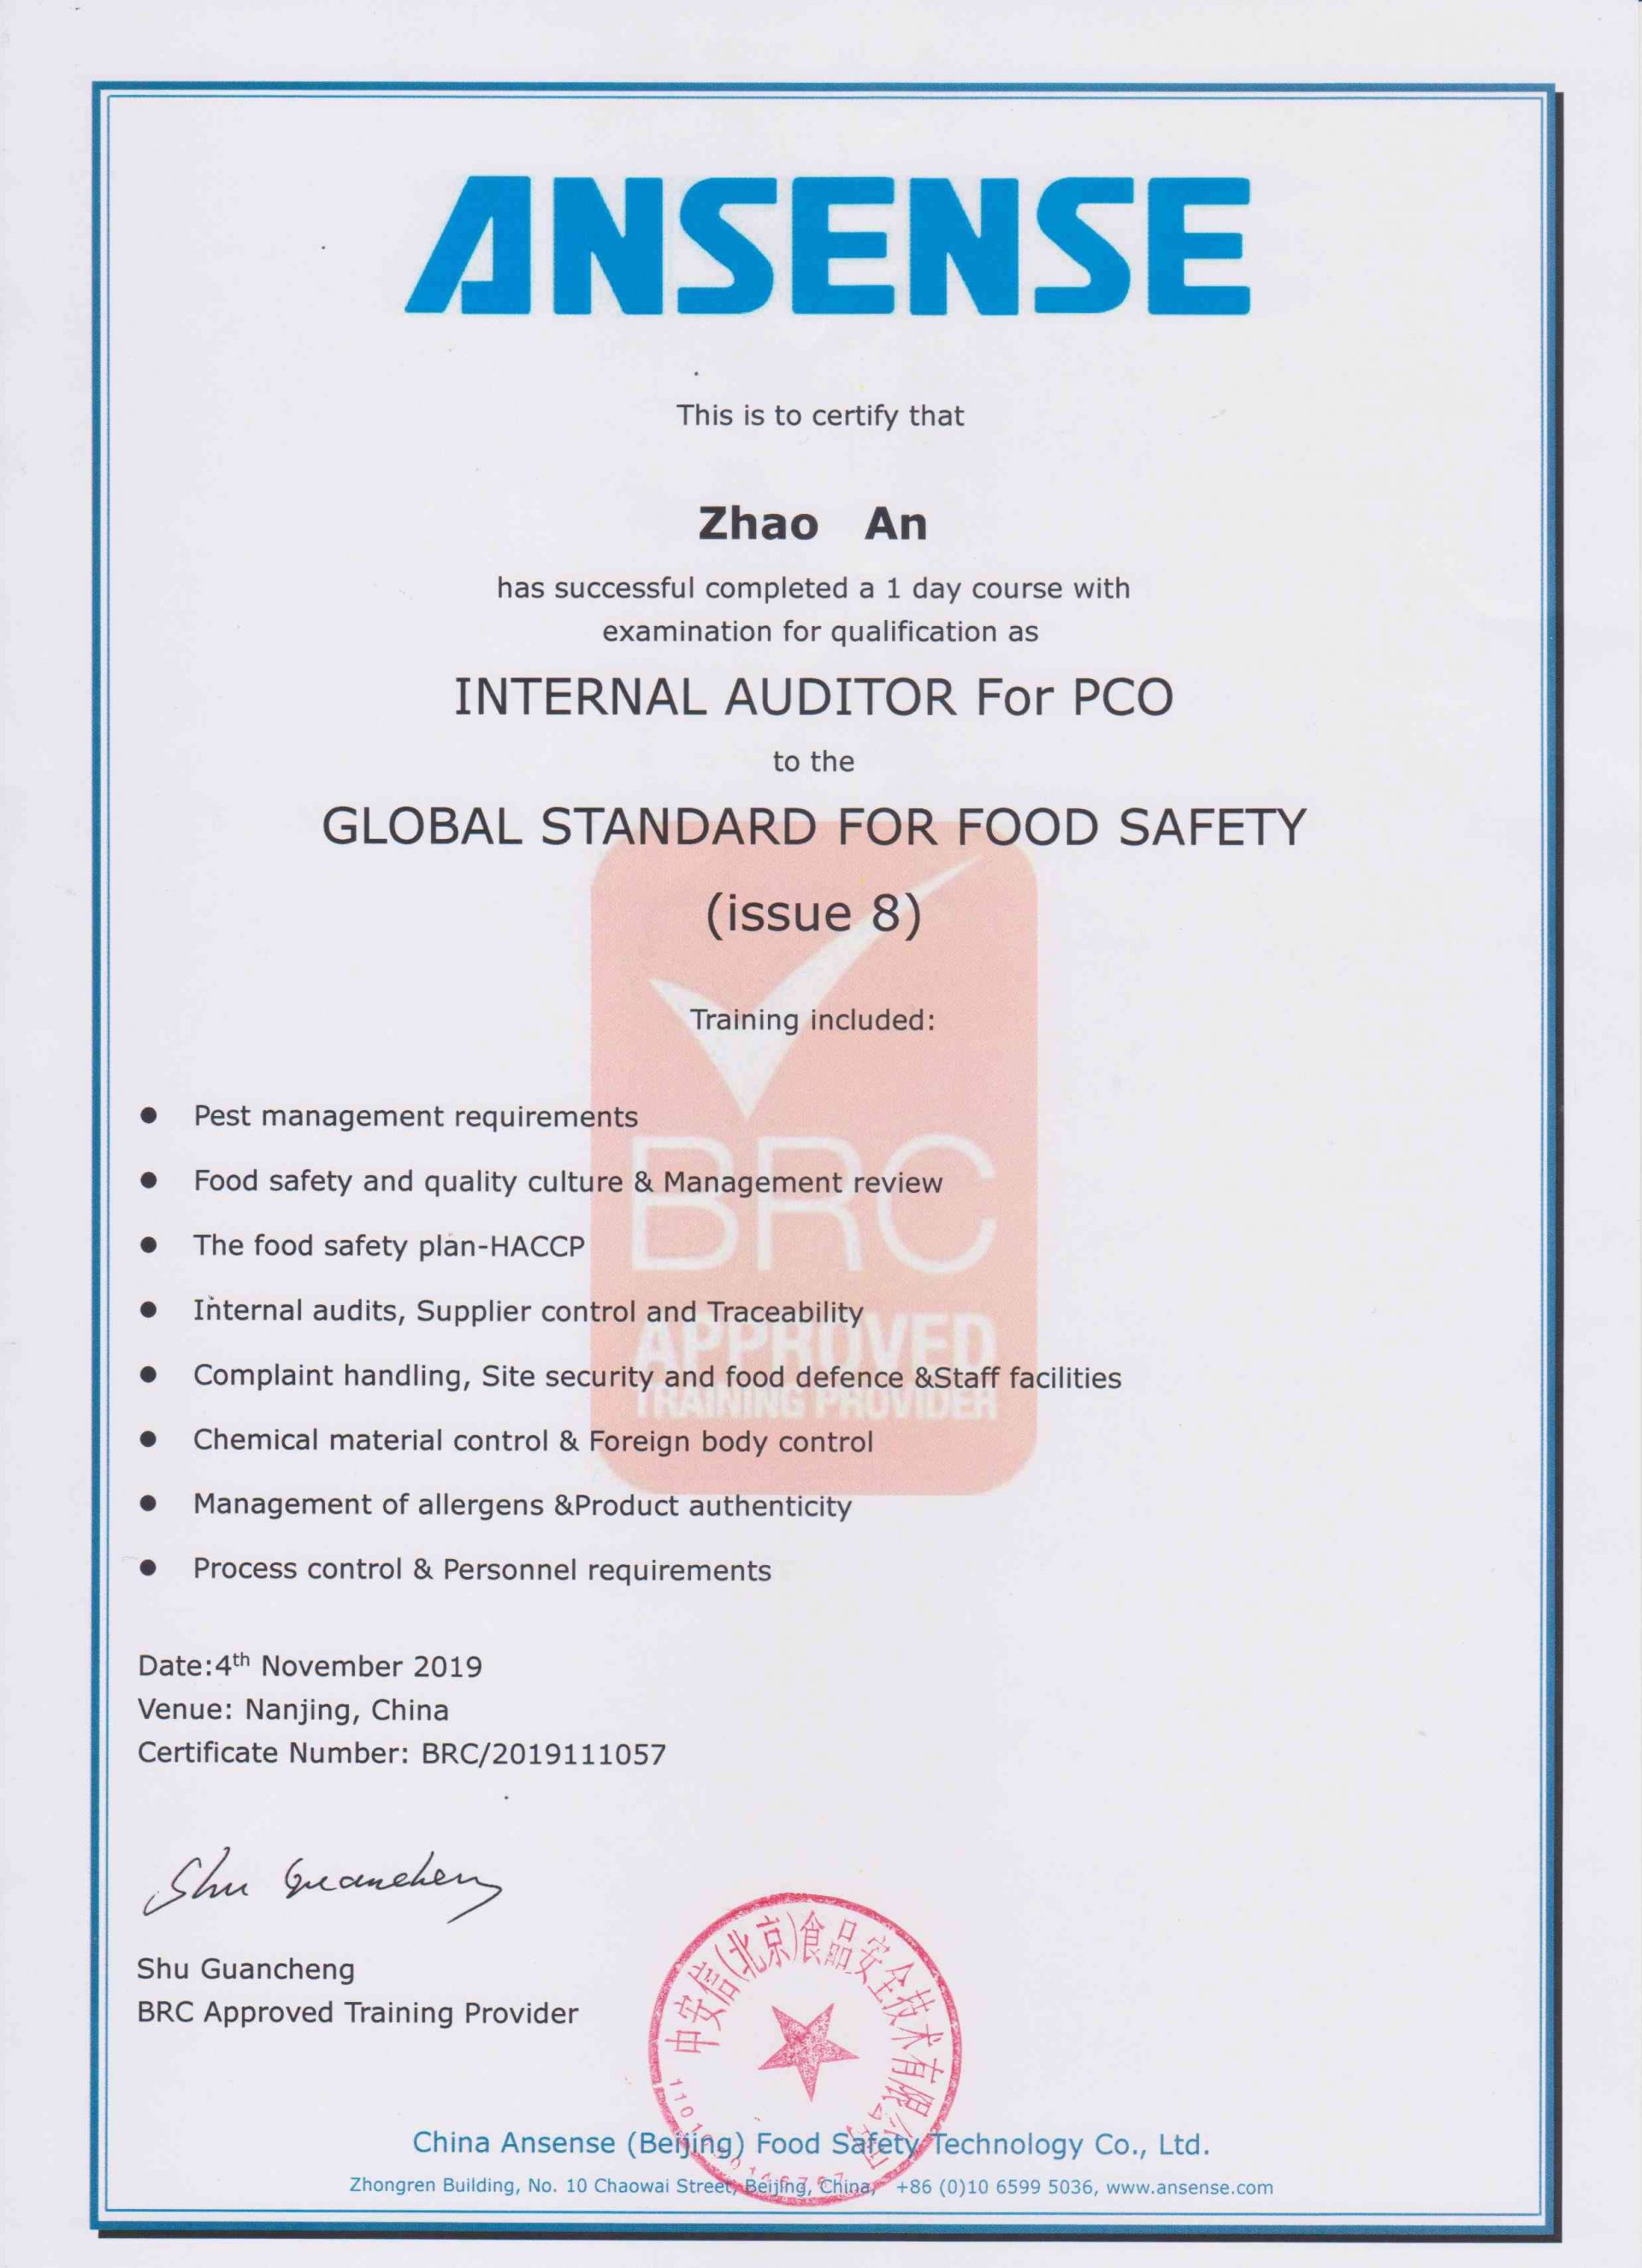 全球食品安全标准PCO内审员资格